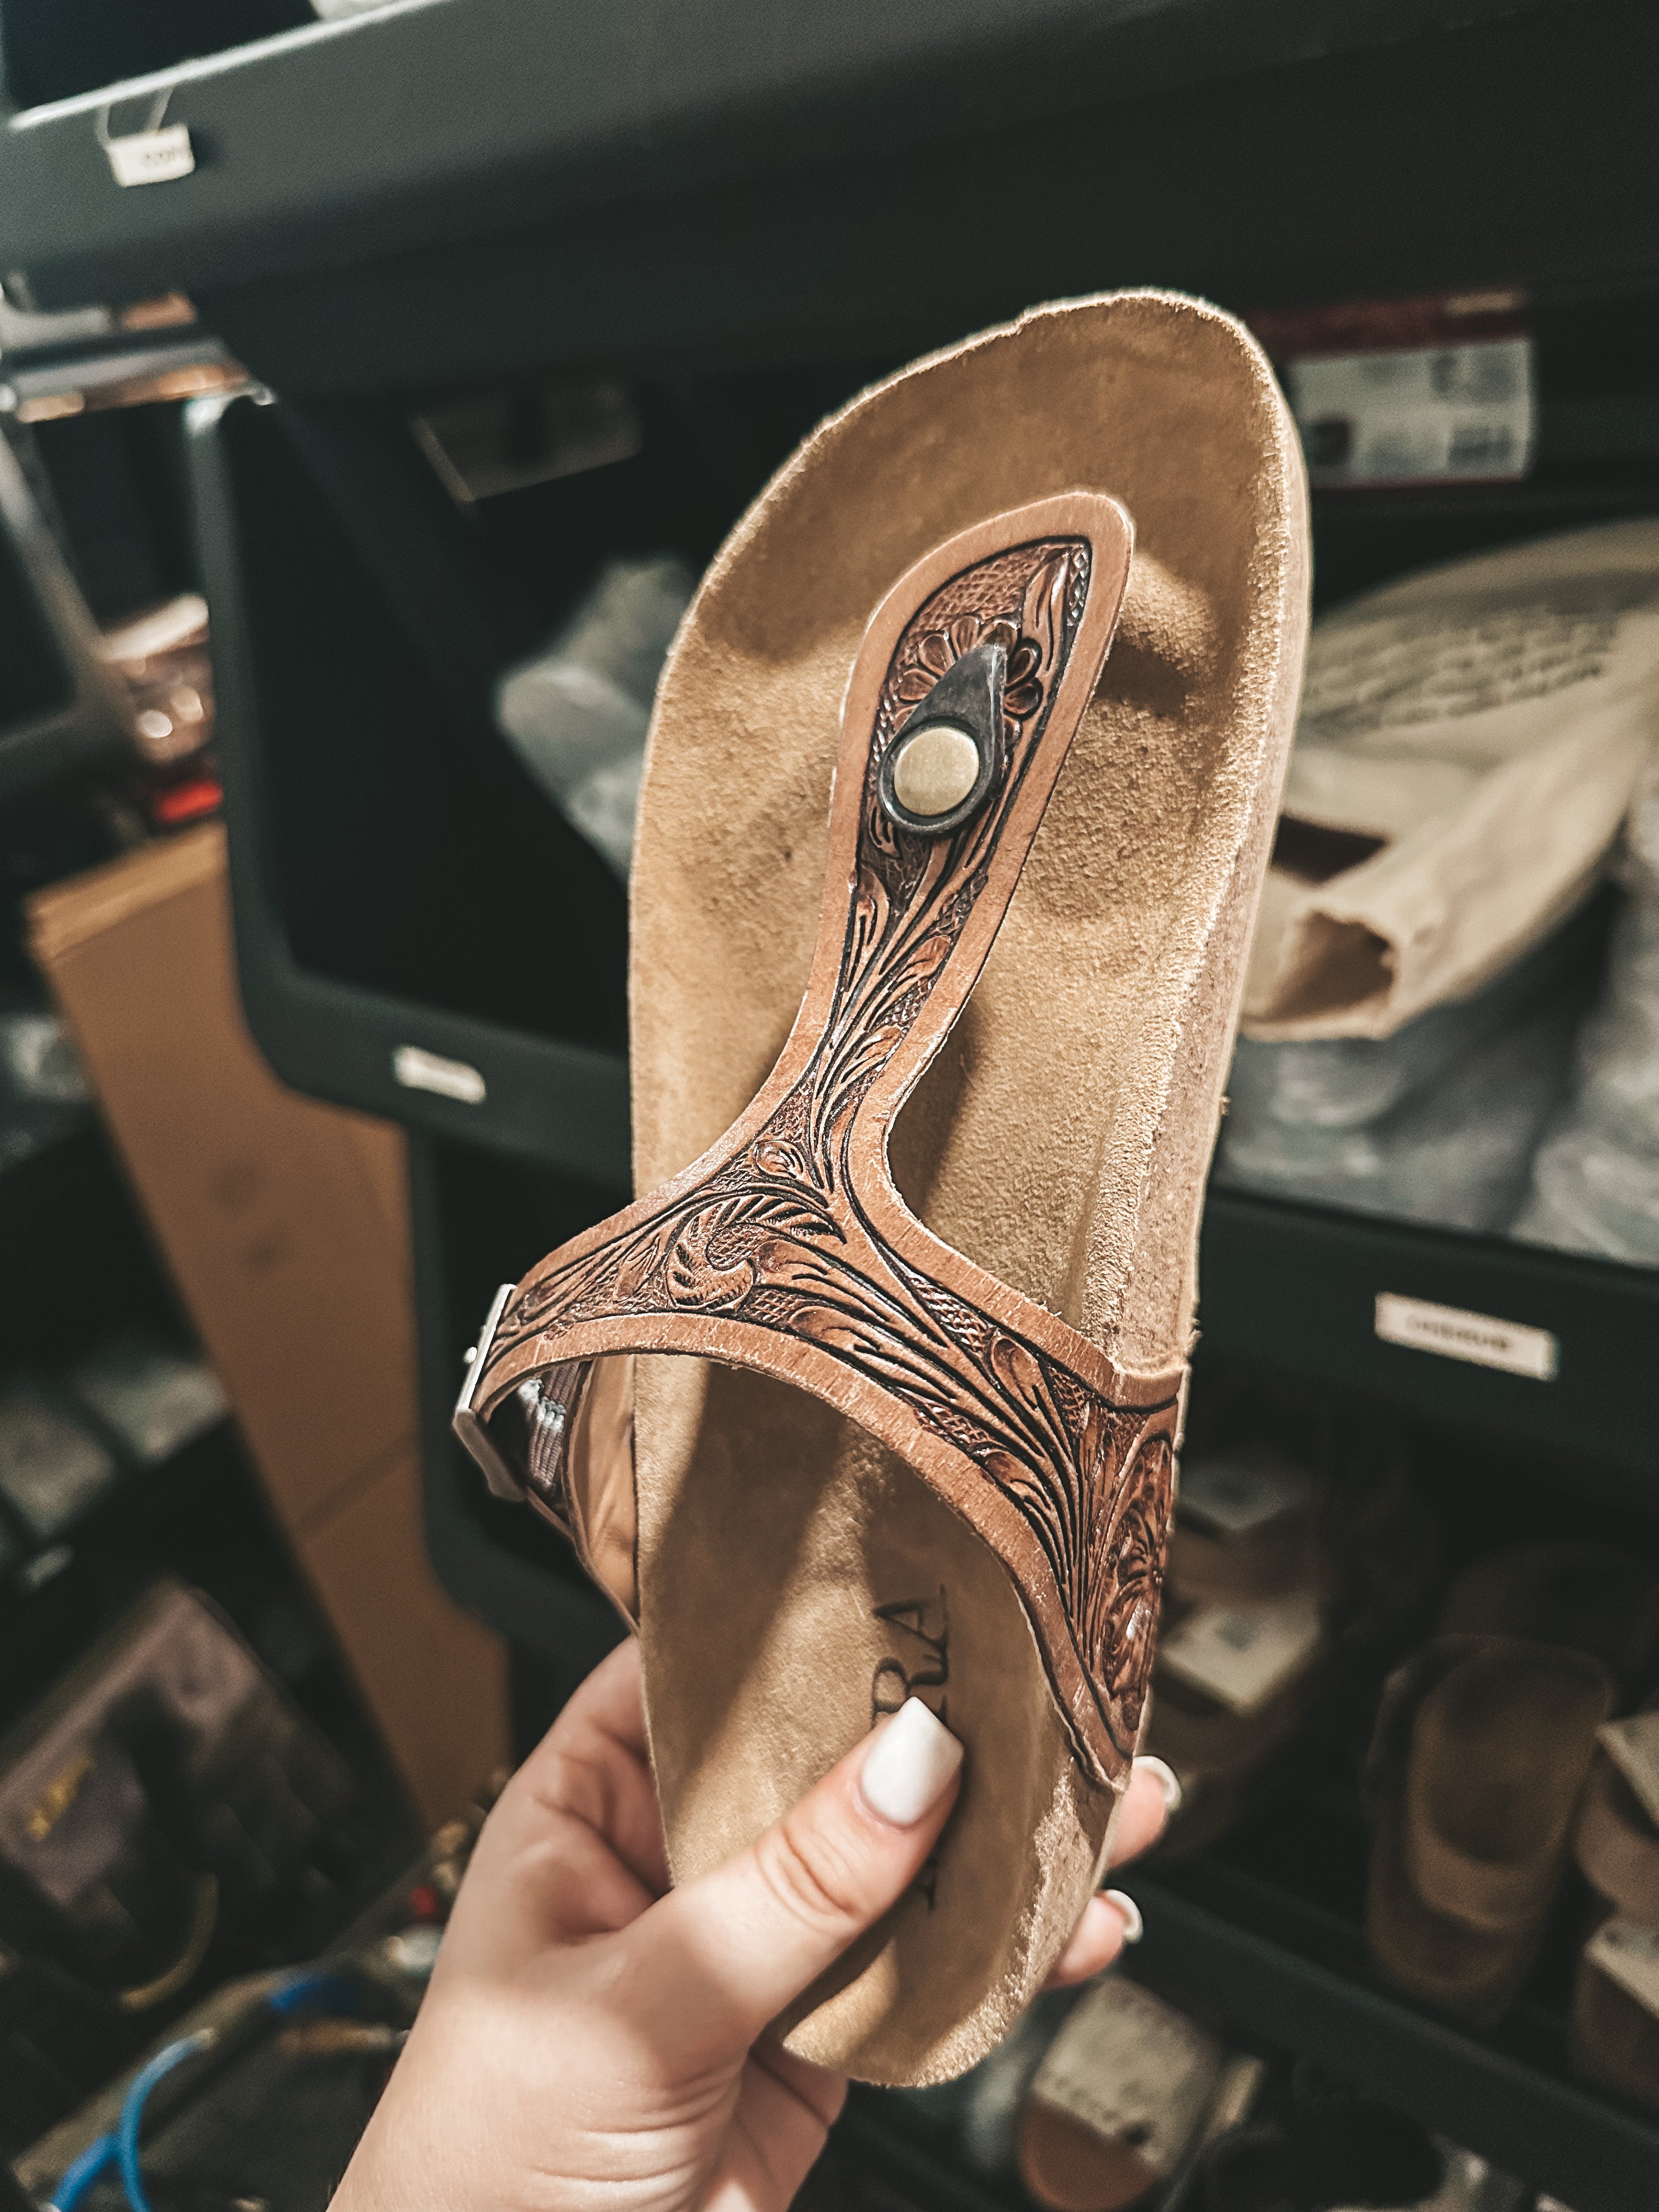 Custom Tooled Leather Birkenstock Sandals